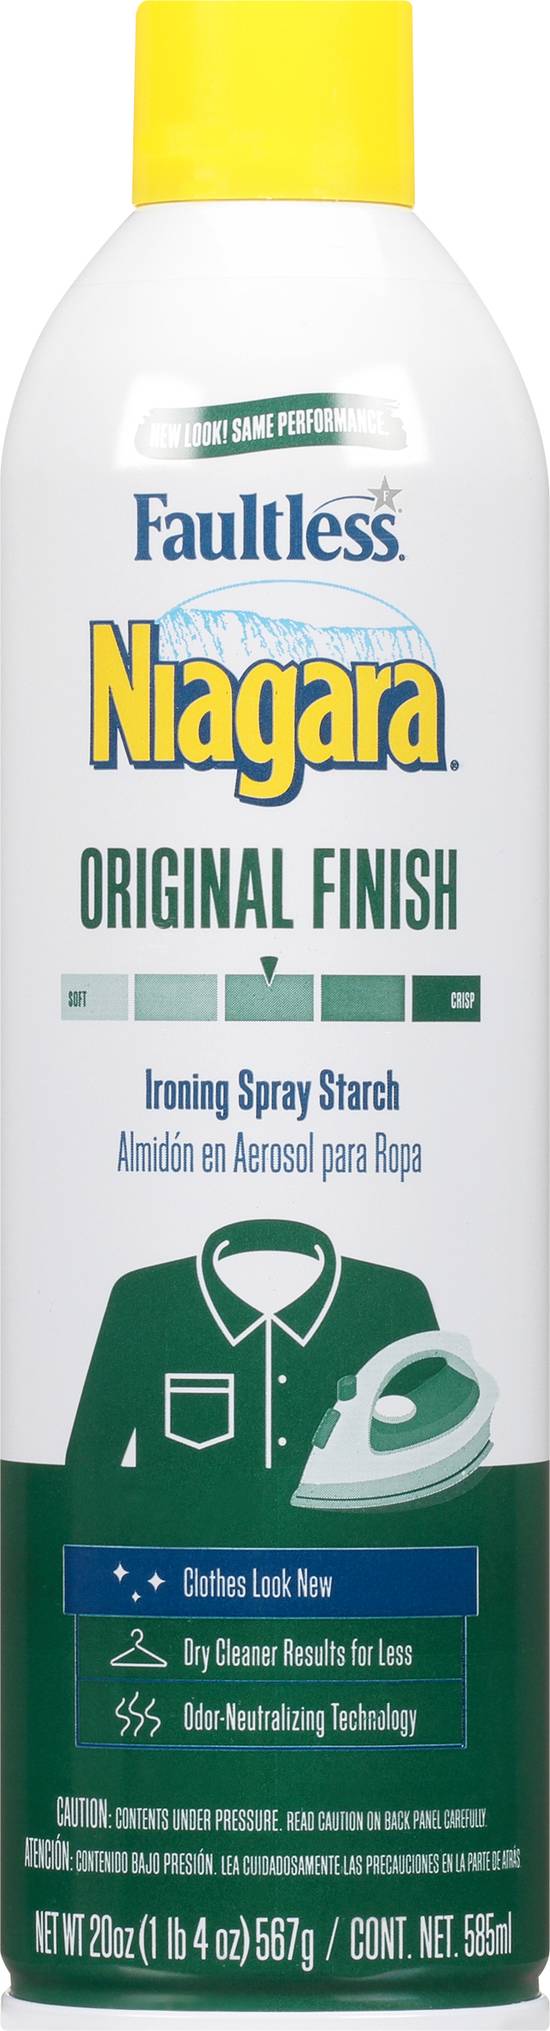 Faultless Niagara Original Finish Spray Starch Plus